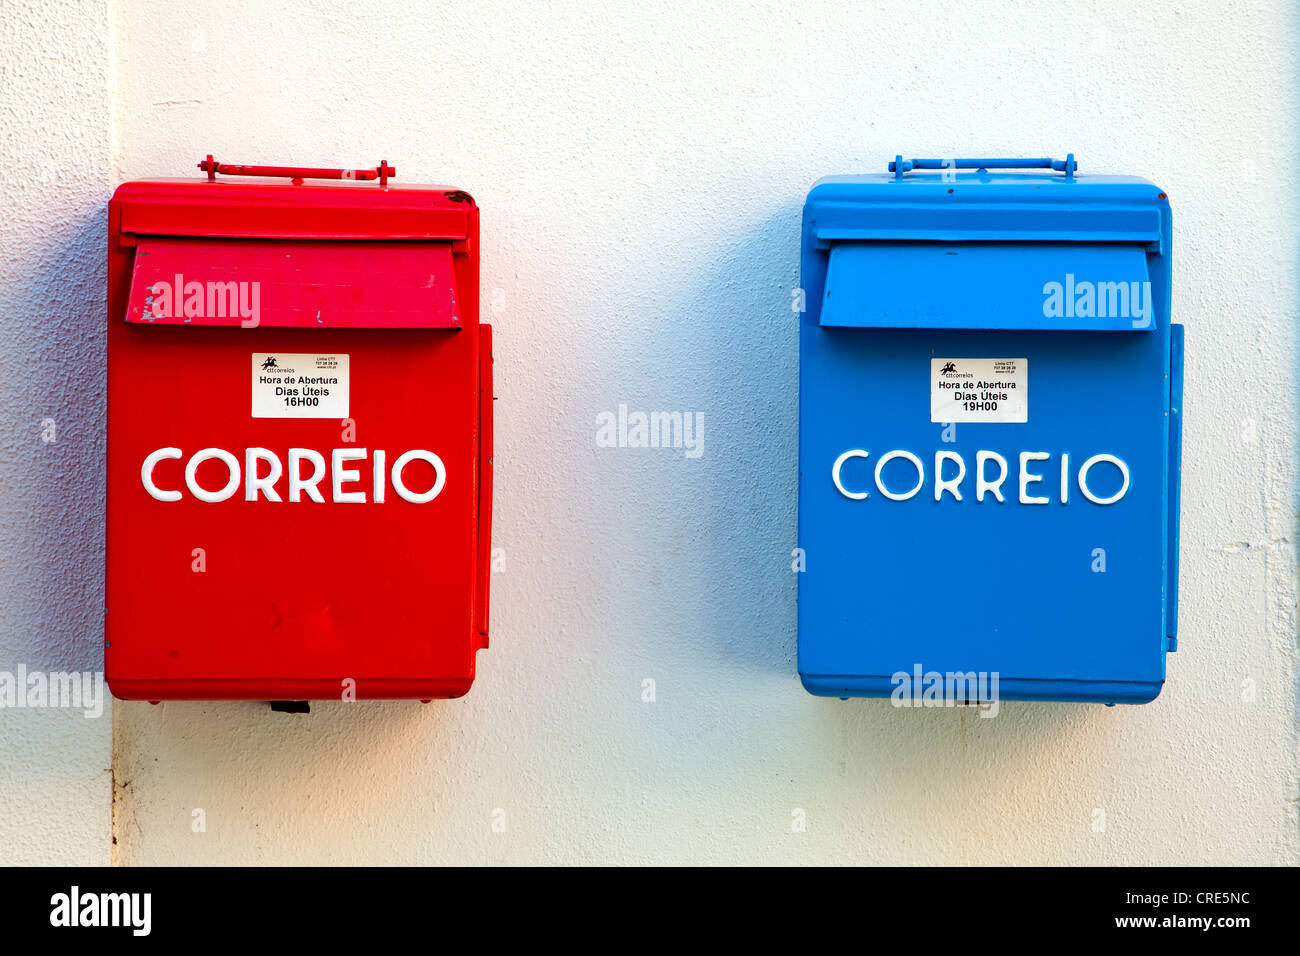 Postfächer des portugiesischen Postdienstes, Correio, in rot und blau für unterschiedliche Abholzeiten im Stadtteil Belem Stockfoto